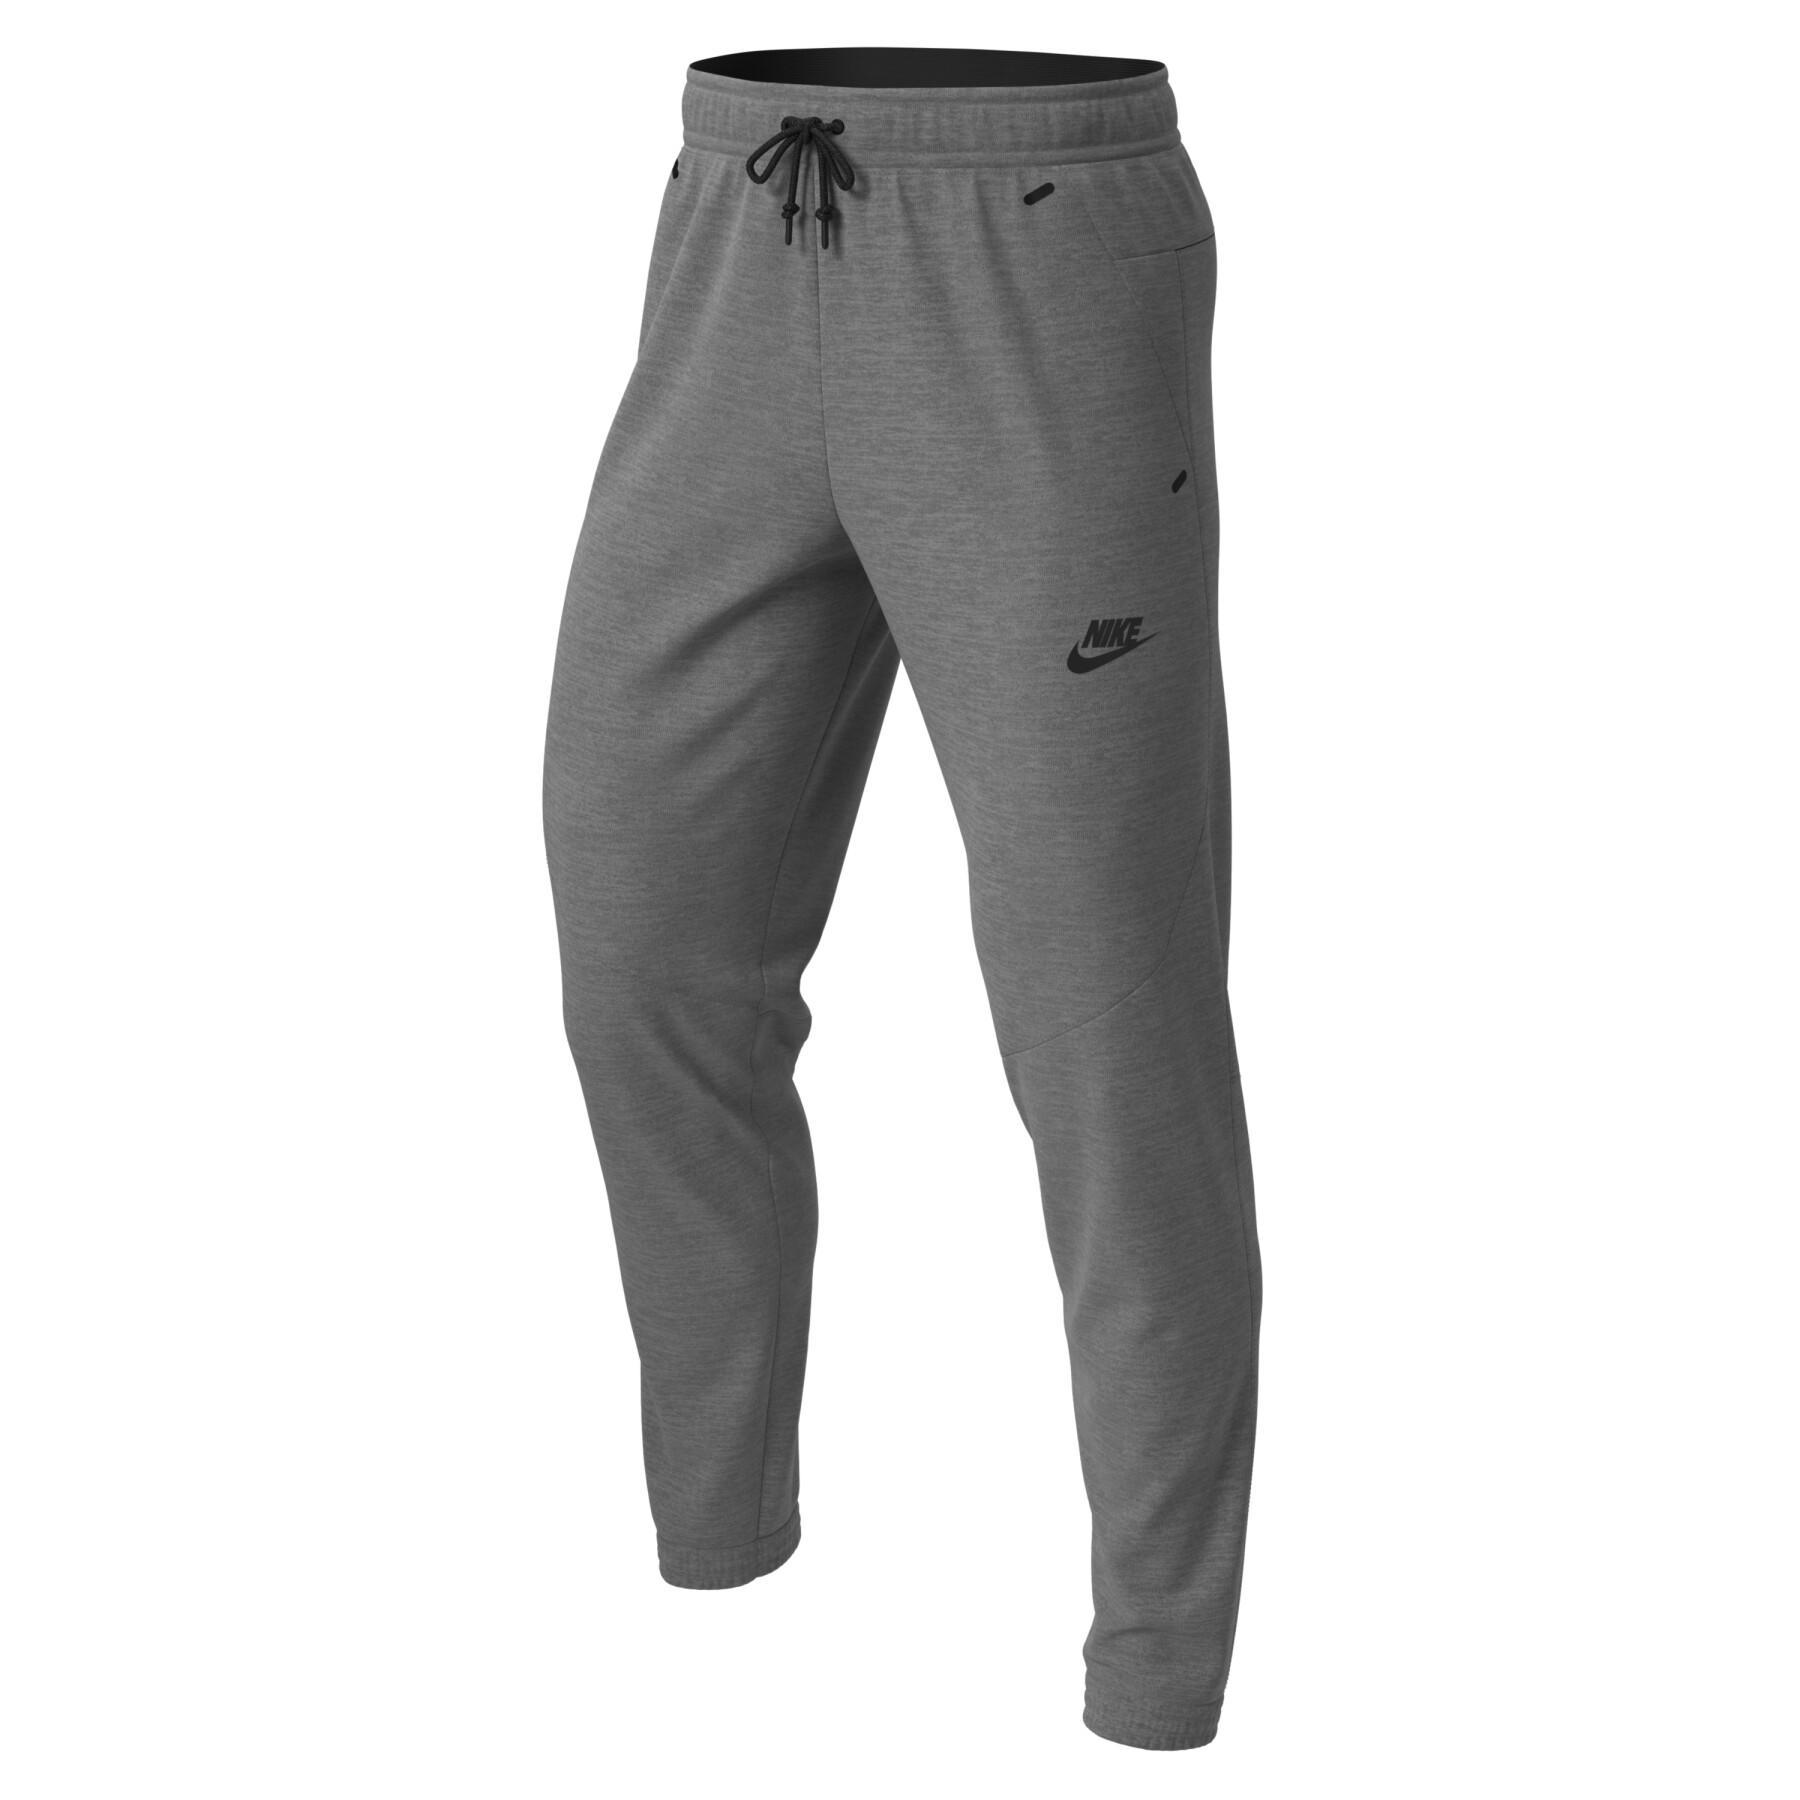 Siatkowy strój do joggingu Nike Sportswear Tech